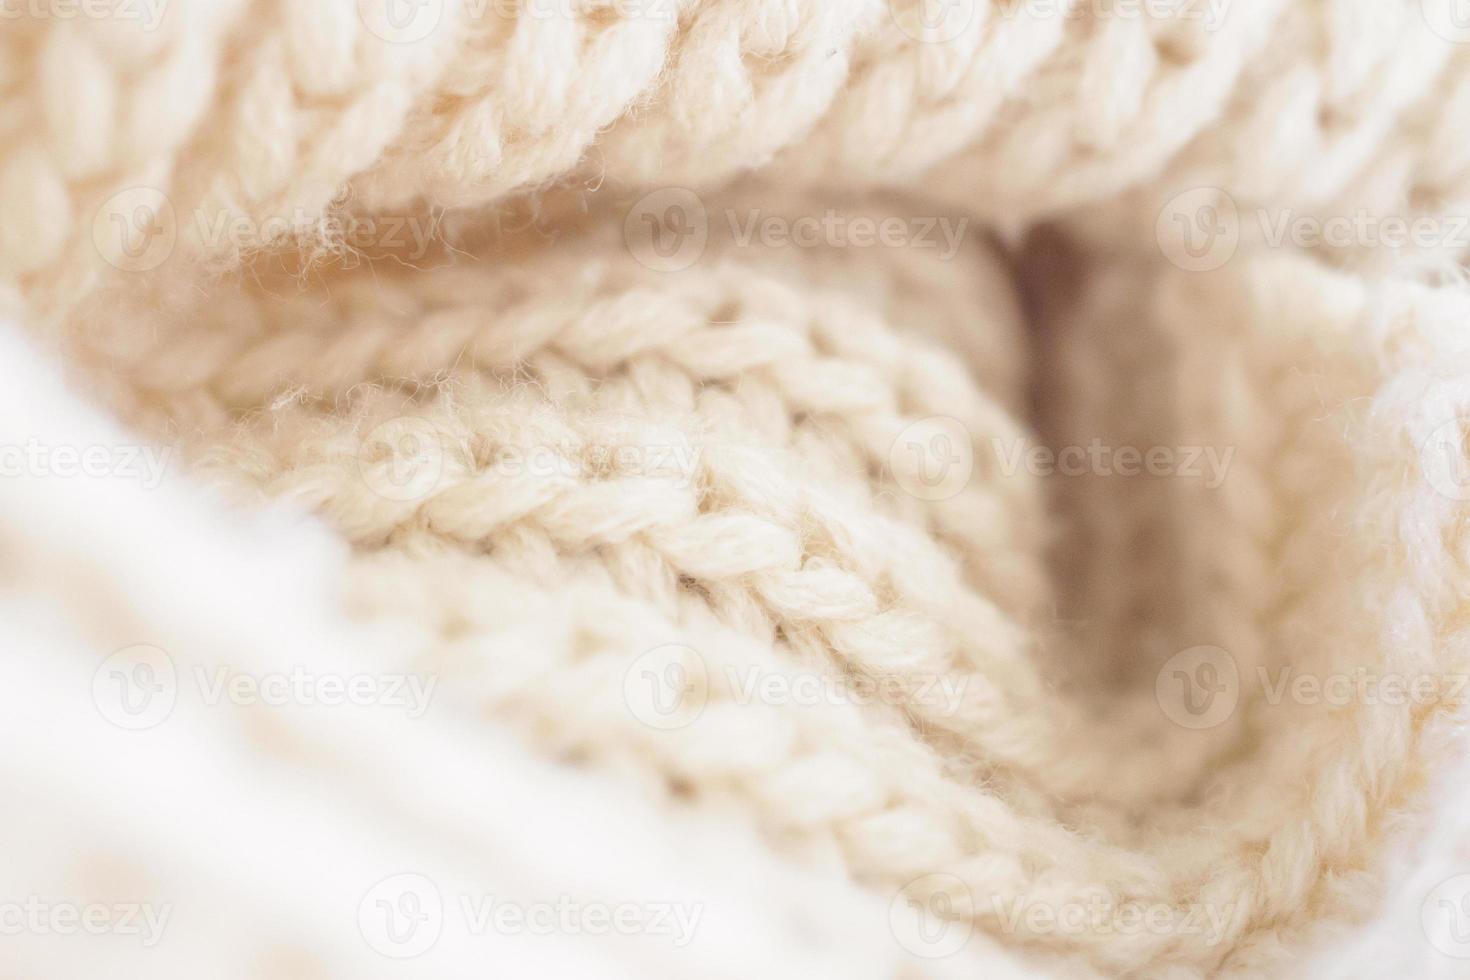 fundo de textura de tecido de lã de malha bege closeup foto